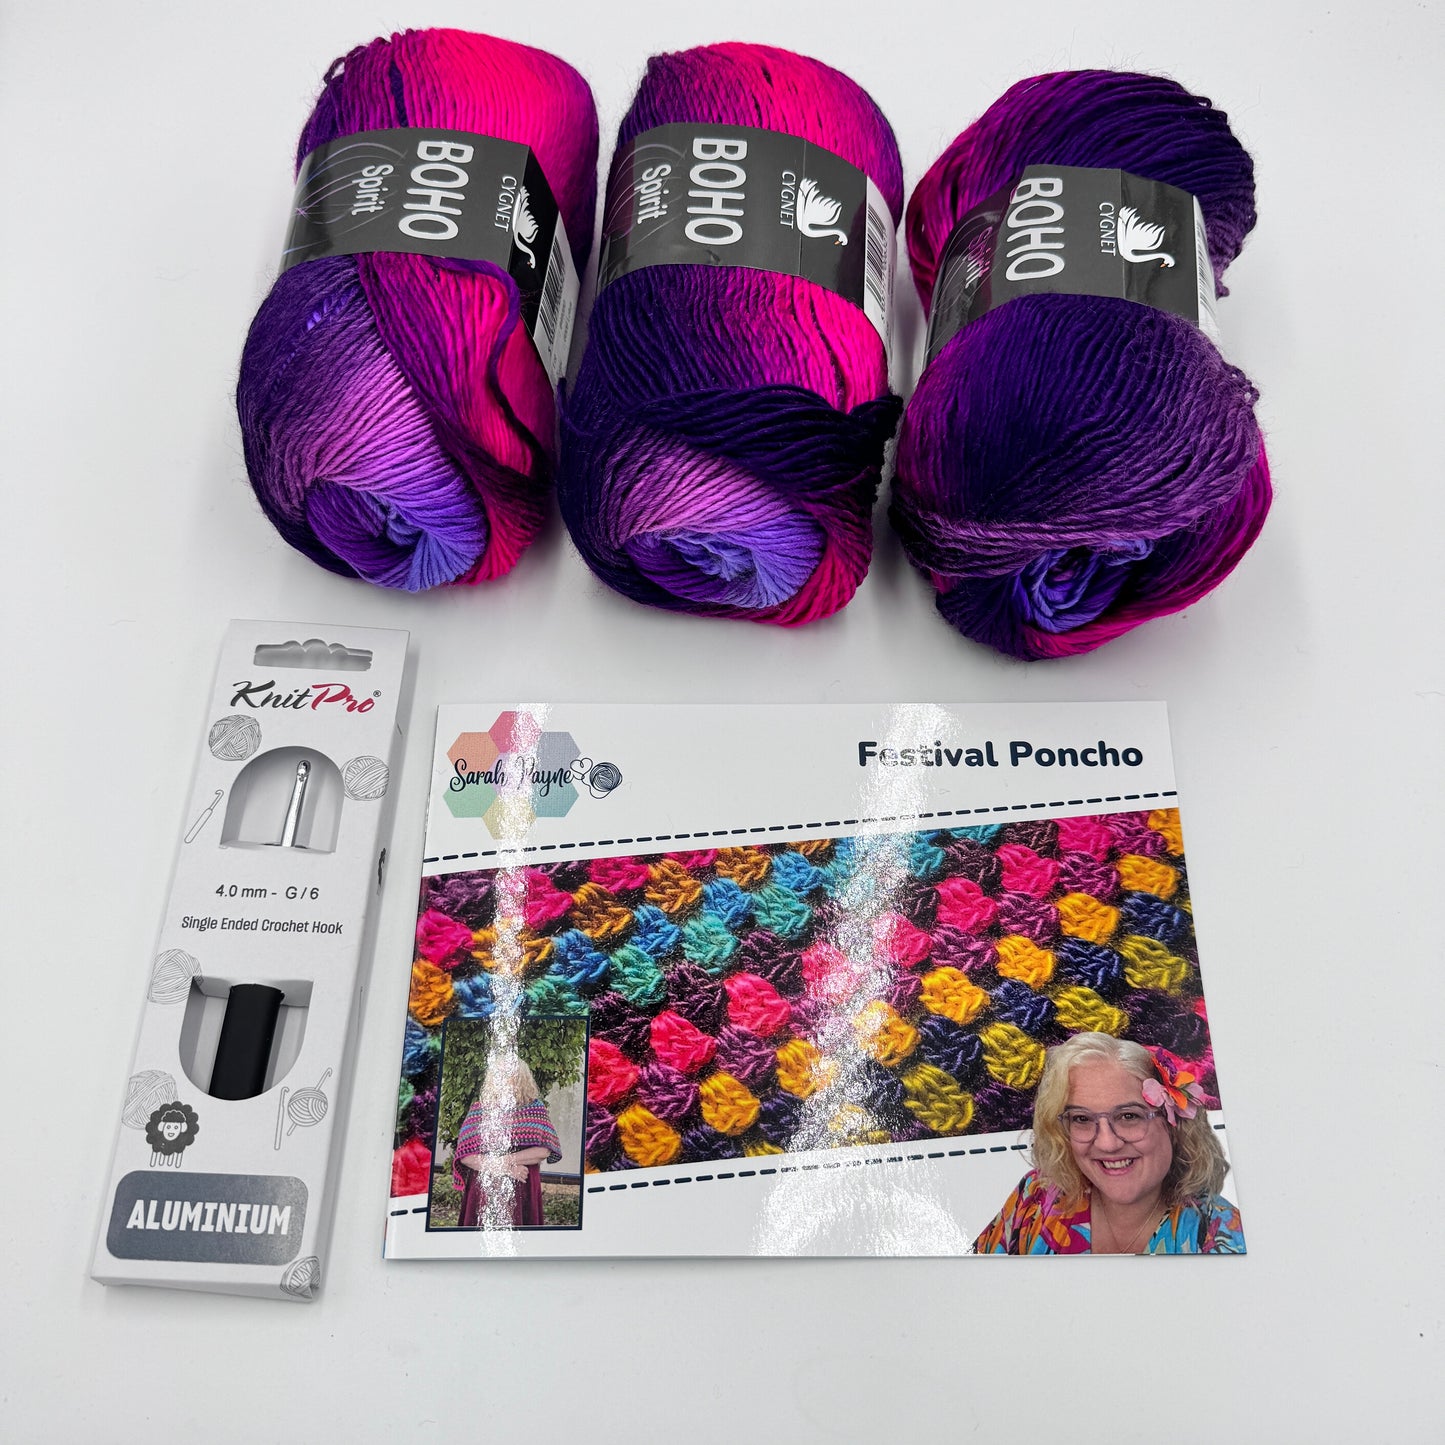 Sarah Payne's Crochet Poncho Kit - Choice of Colour